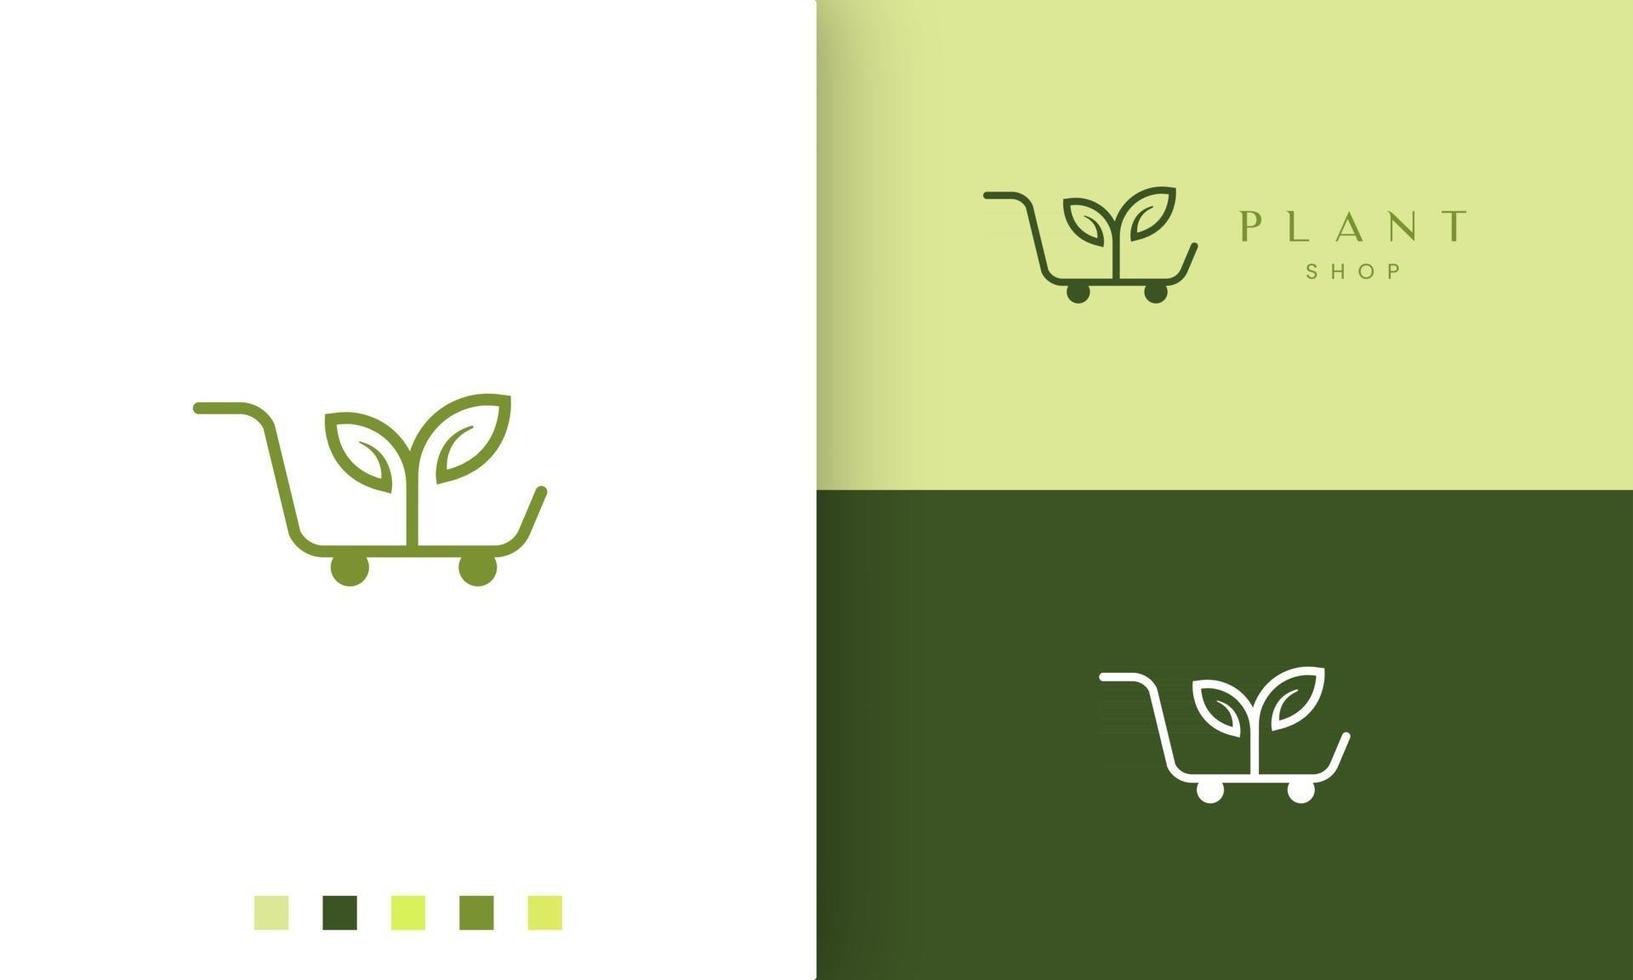 logo del carrello per negozio naturale o biologico in stile semplice e moderno vettore